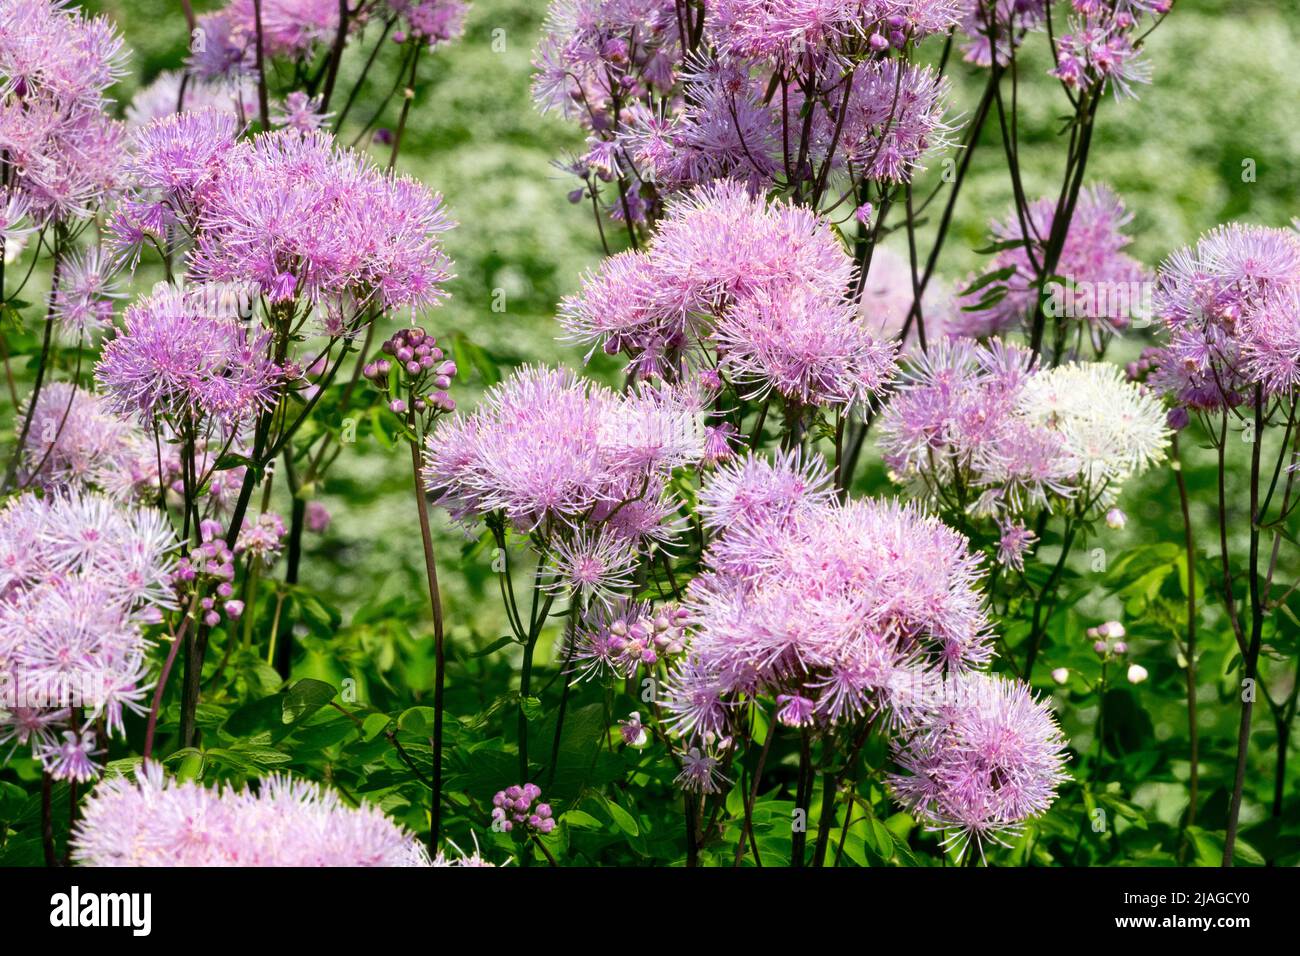 Thalictrum aquilegifolium, Thalictrum Nimbus Pink, Meadow Rue, Garden, Pink, Plant, Thalictrum, Beautiful, Flowers Stock Photo